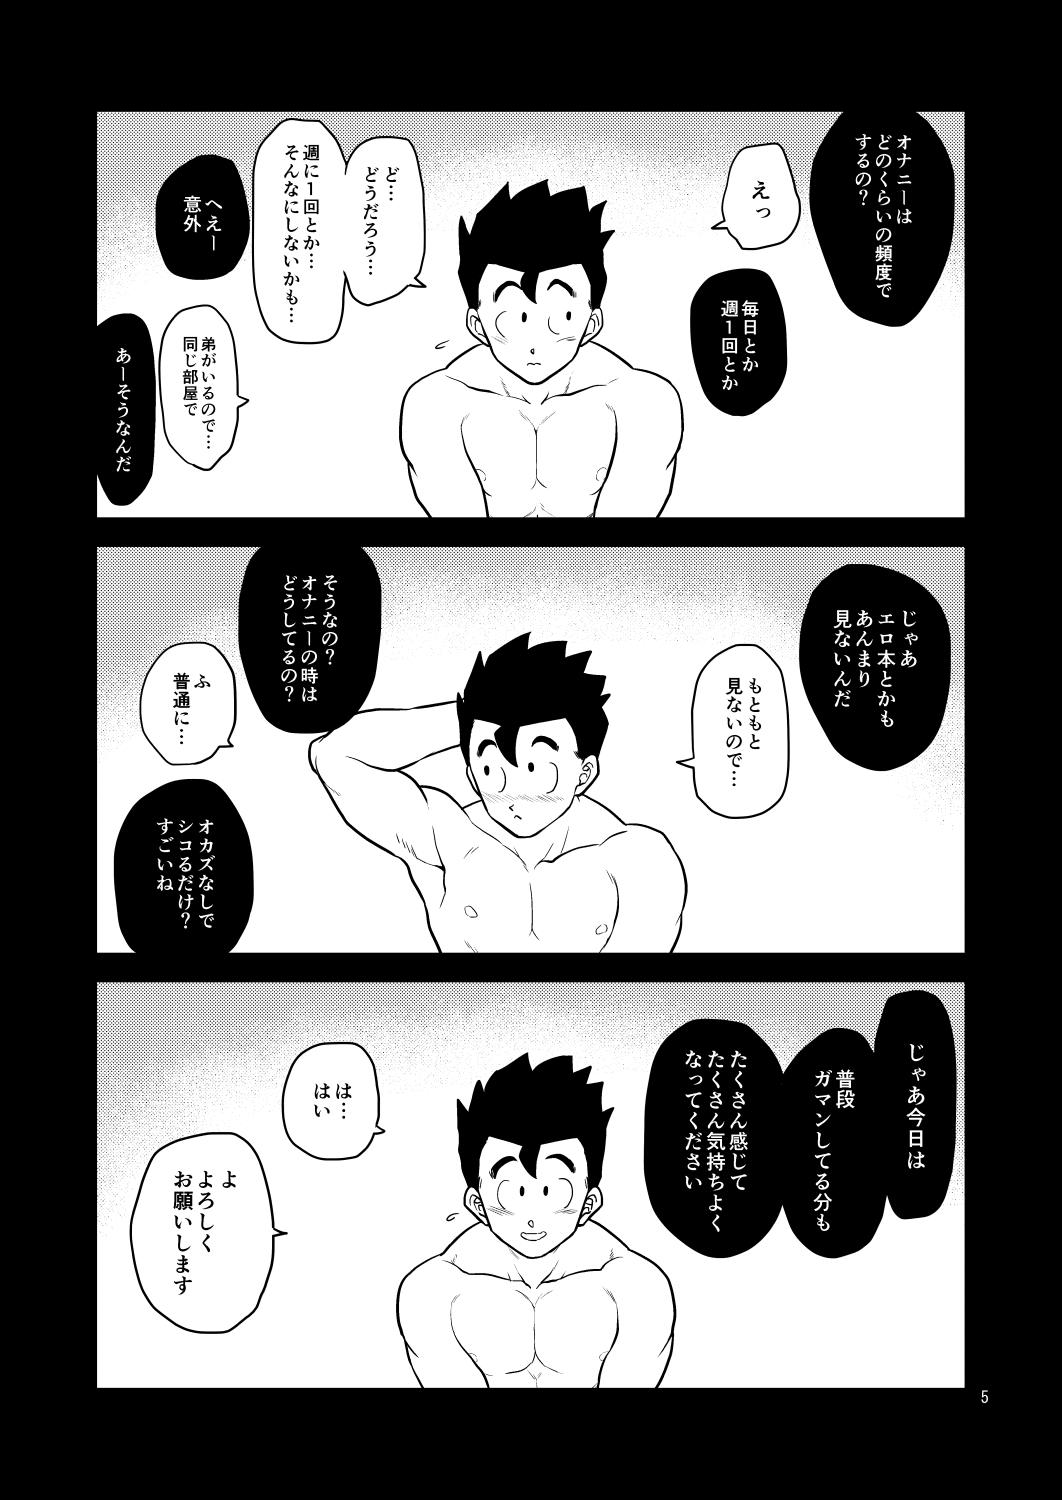 Orgia Honjitsu wa Nama Biyori - Dragon ball z Cavalgando - Page 4